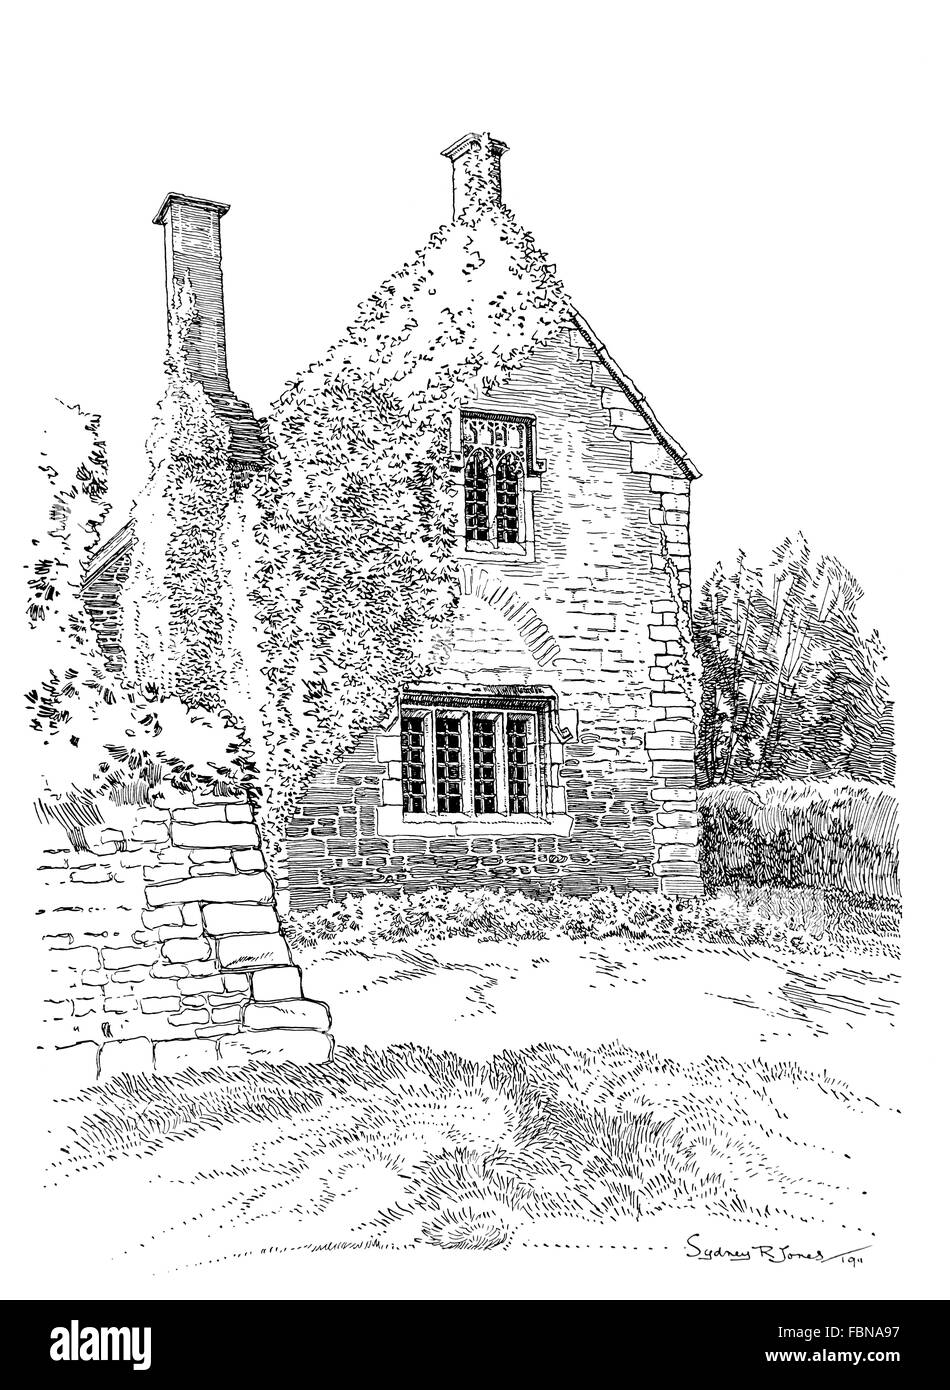 Royaume-uni, Angleterre, Dorset, Trent, maison ancienne avec réducteur à pignon couvert de fenêtres à meneaux de pierre, 1911 illustration de ligne Banque D'Images